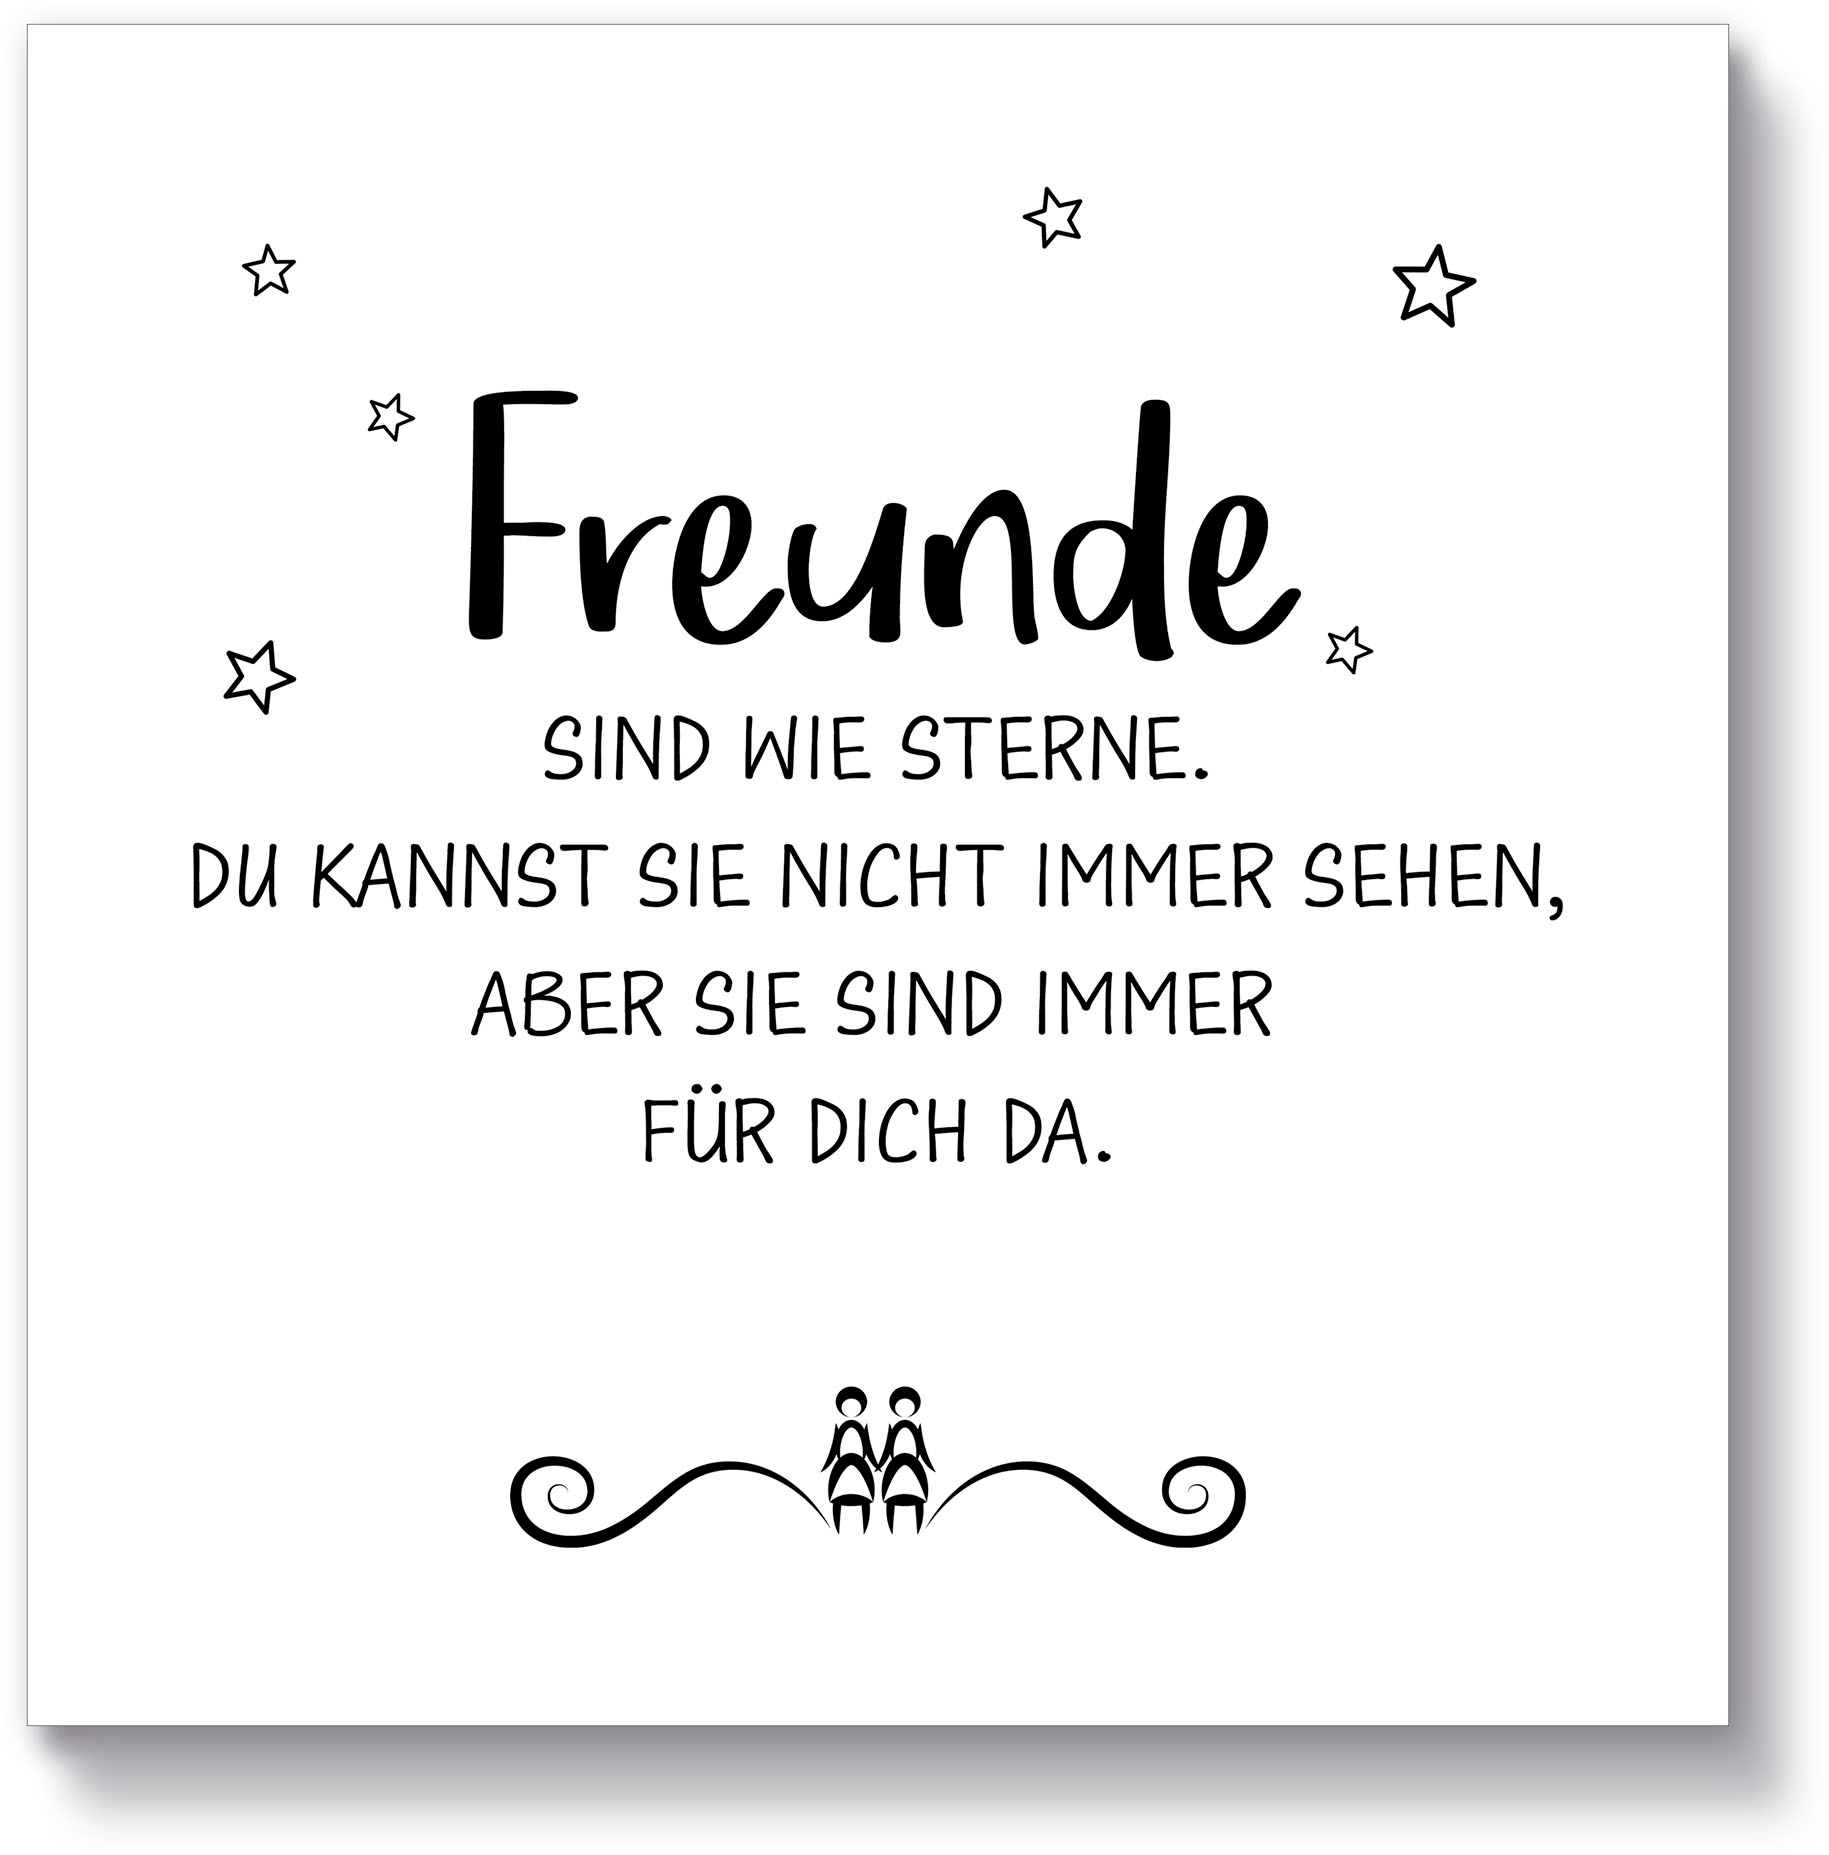 Holzbild »Freunde II«, Sprüche & Texte, (1 St.)